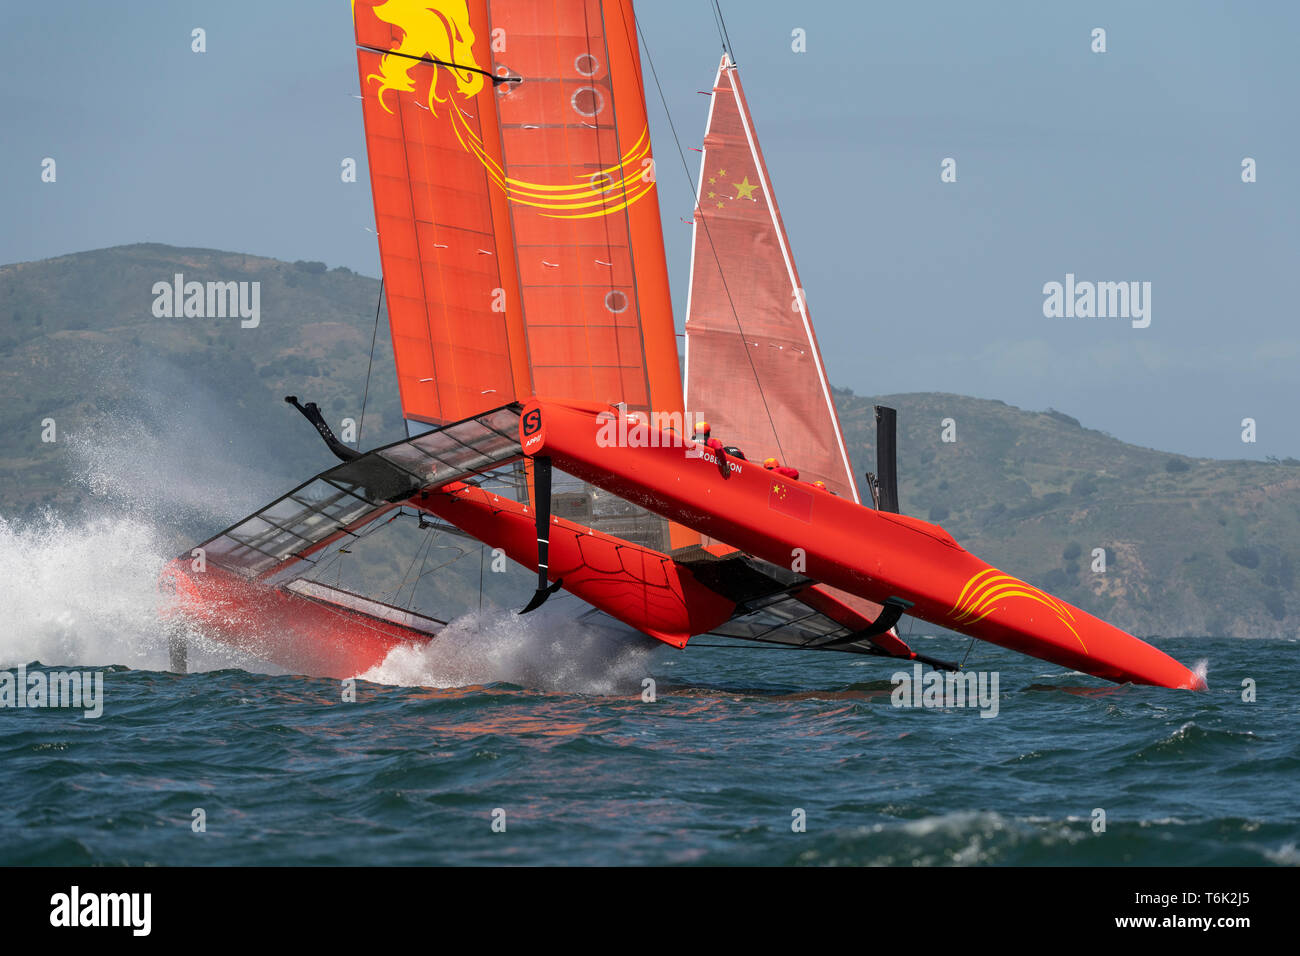 Team China Folie hoch und stürzt sich in eine beschädigte Flügel während des SailGP Ereignis 2, Saison 1, San Francisco. Stockfoto